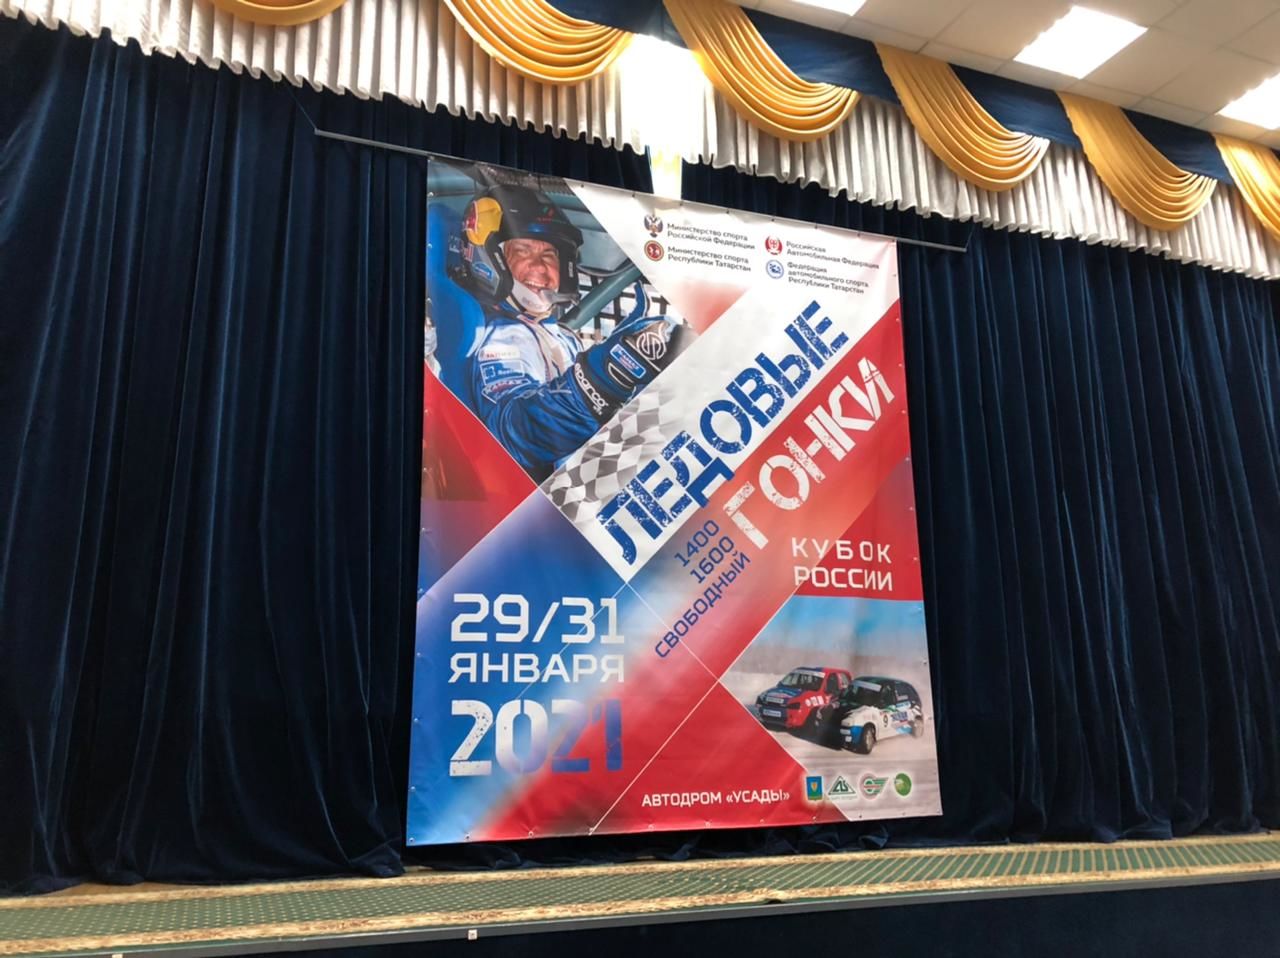 Определены победители «Ледовых гонок 2021» в Усадах.